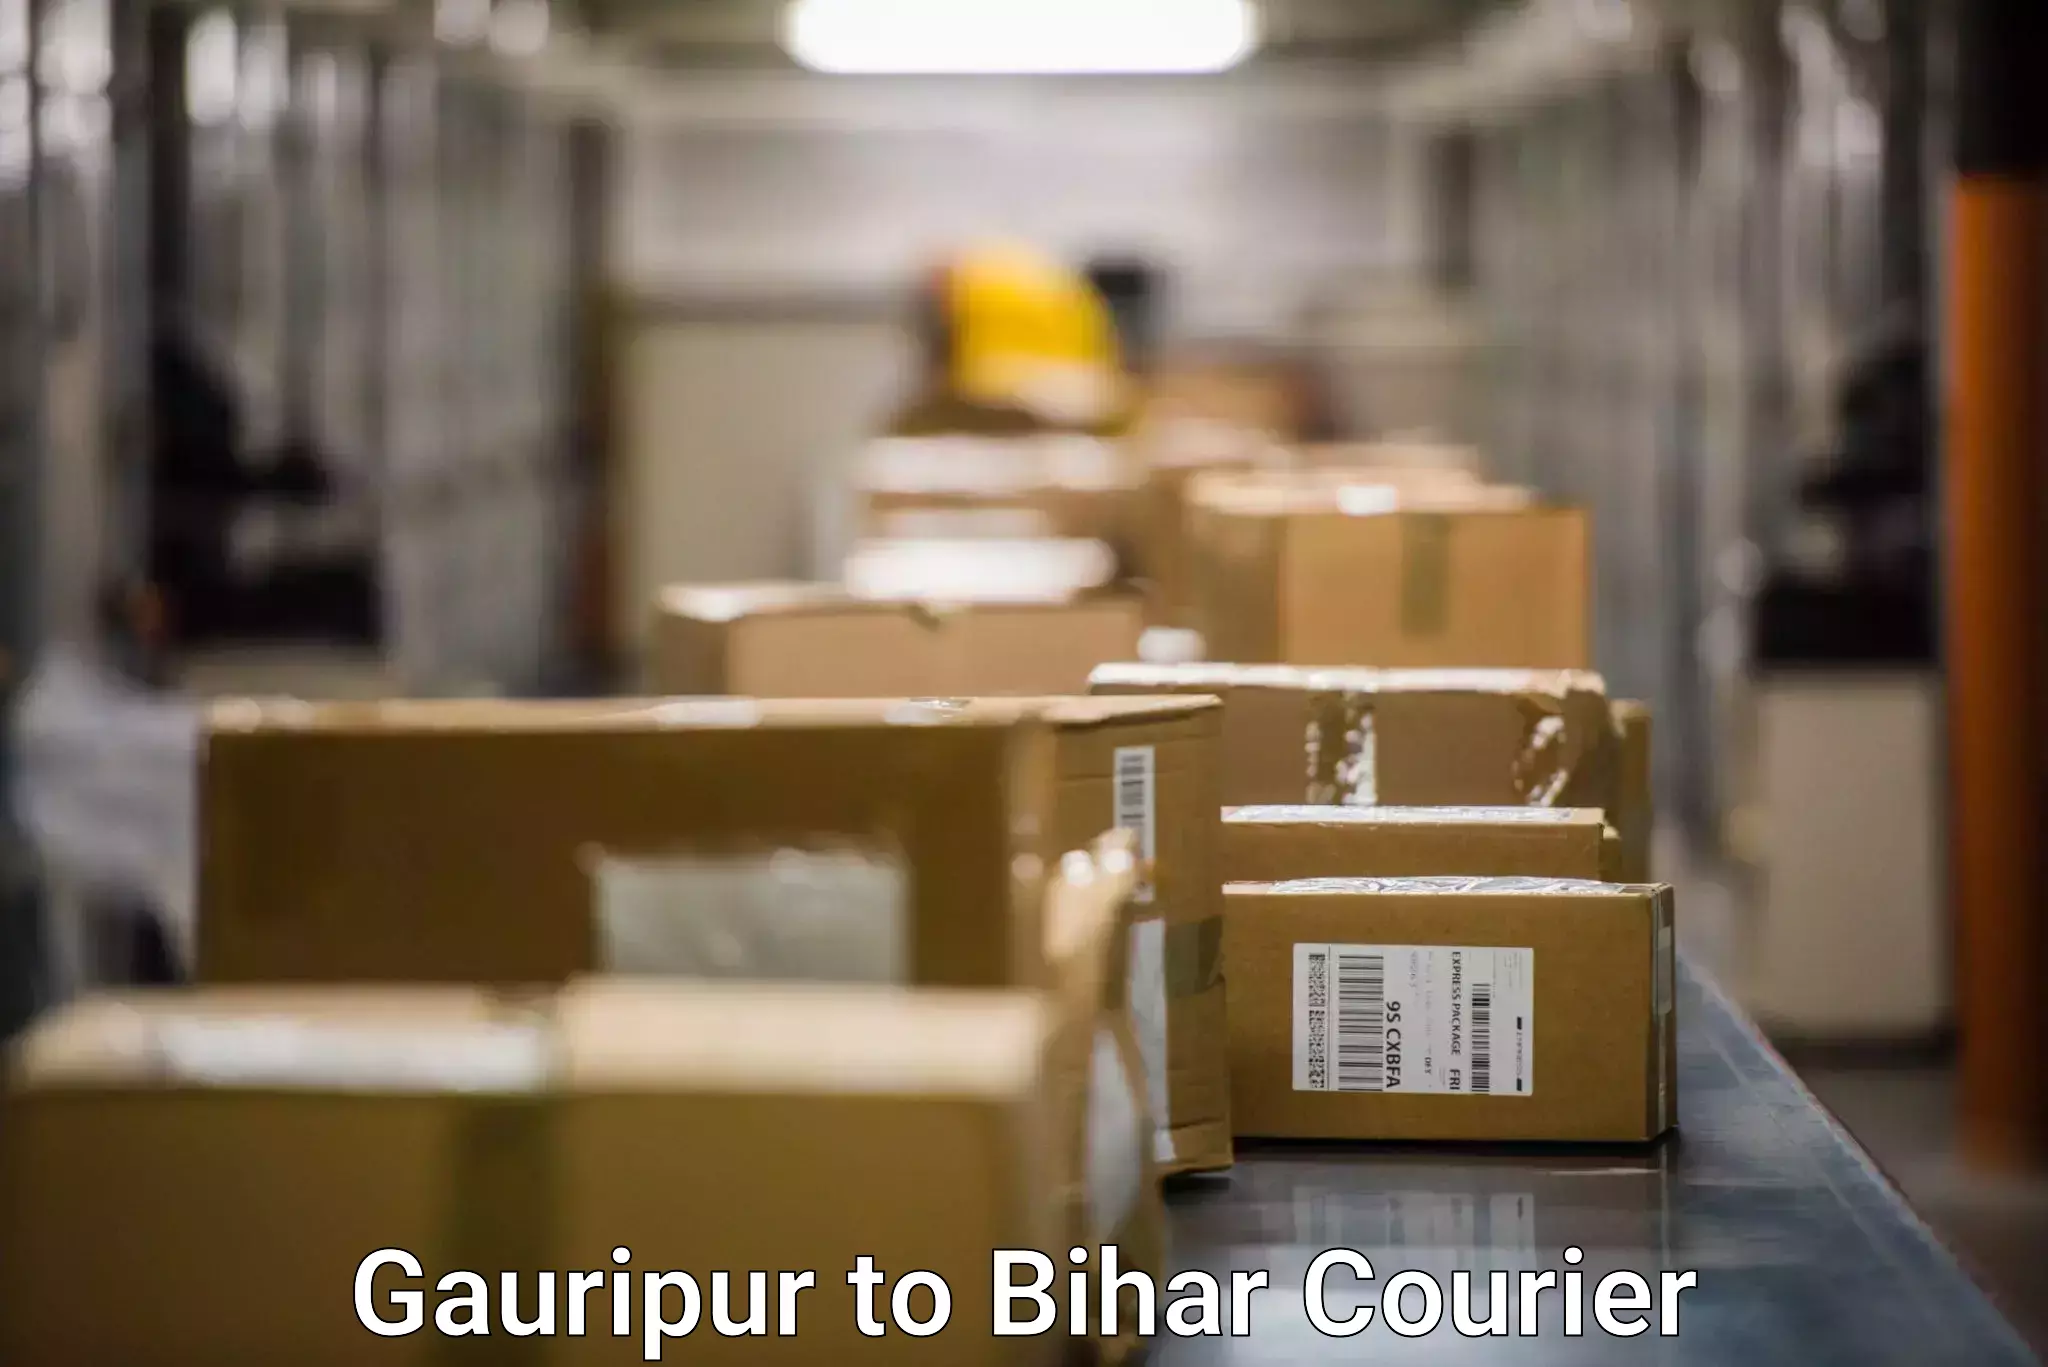 Next-generation courier services Gauripur to Muzaffarpur